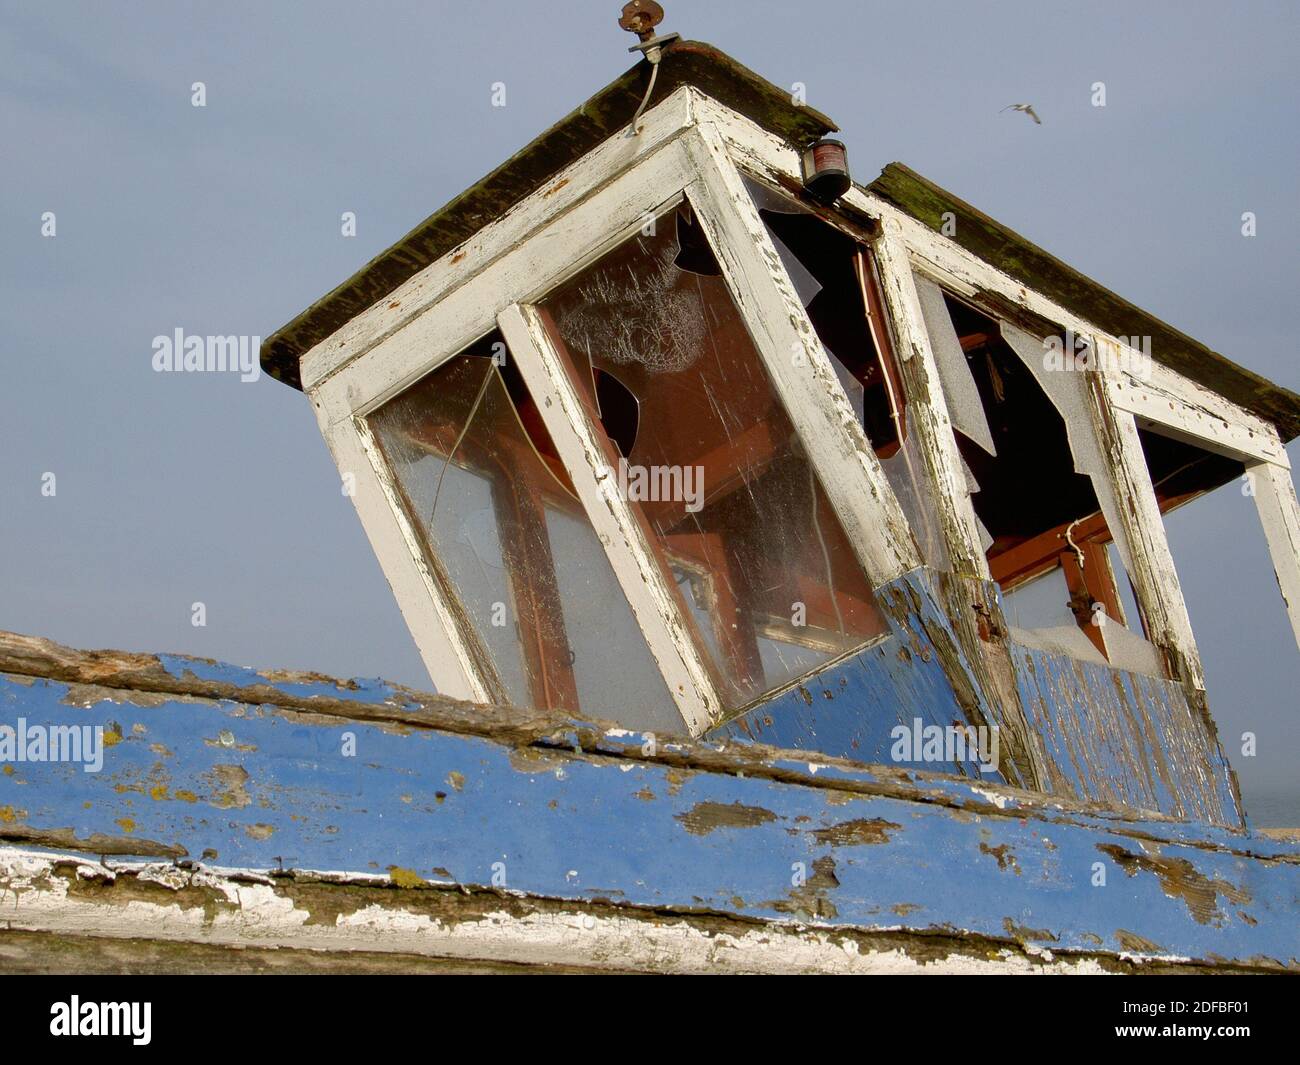 Das Pilothaus eines alten Wrackbootes am Dungeness Strand an Englands Südküste. Dieses Boot, verlassen und hoch und trocken, wird nicht mehr segeln. Stockfoto